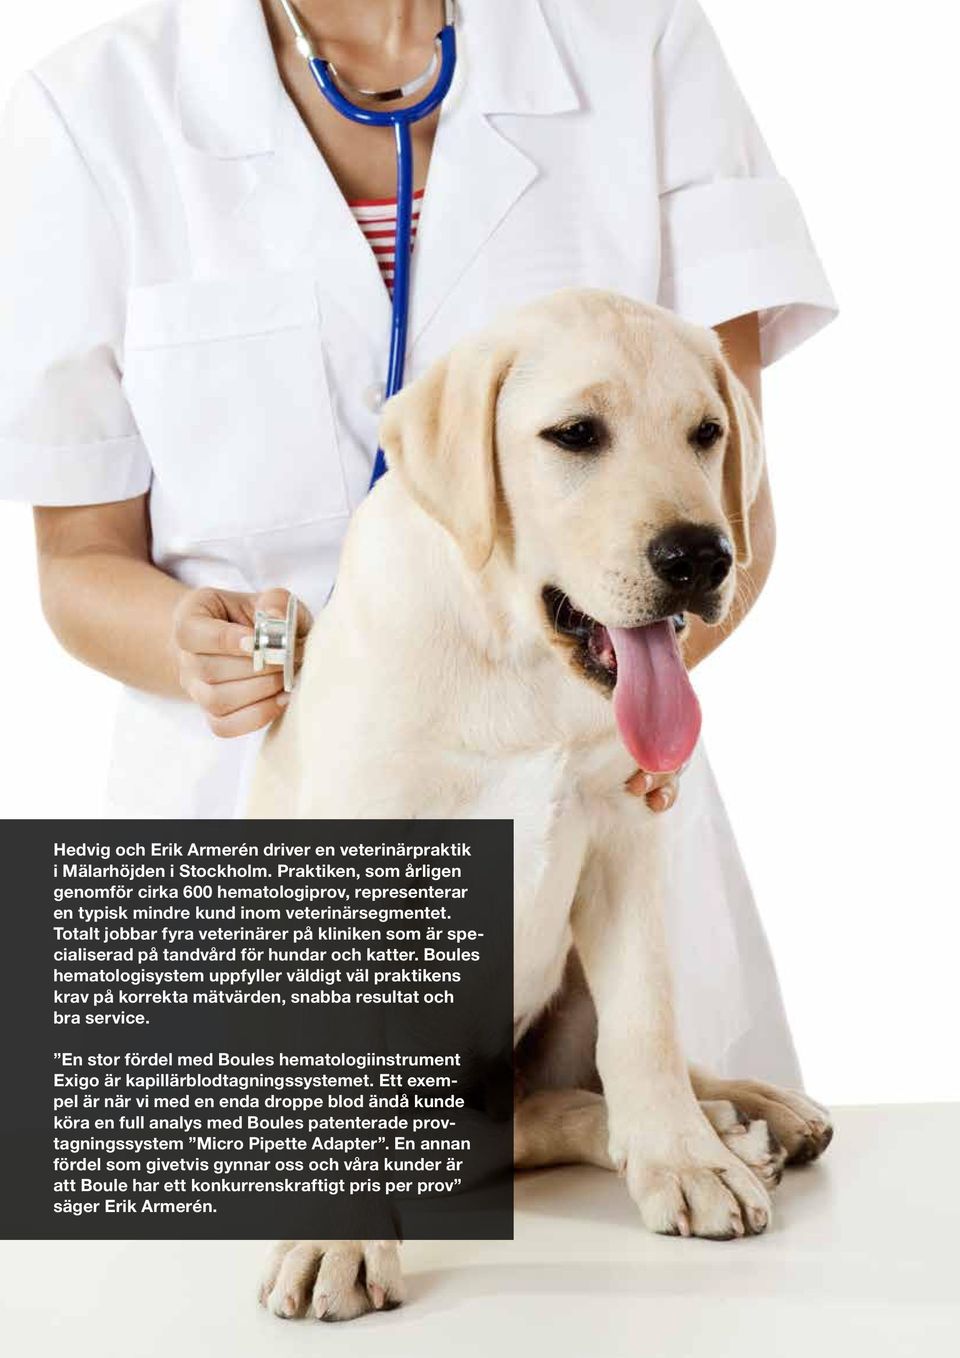 Totalt jobbar fyra veterinärer på kliniken som är specialiserad på tandvård för hundar och katter.